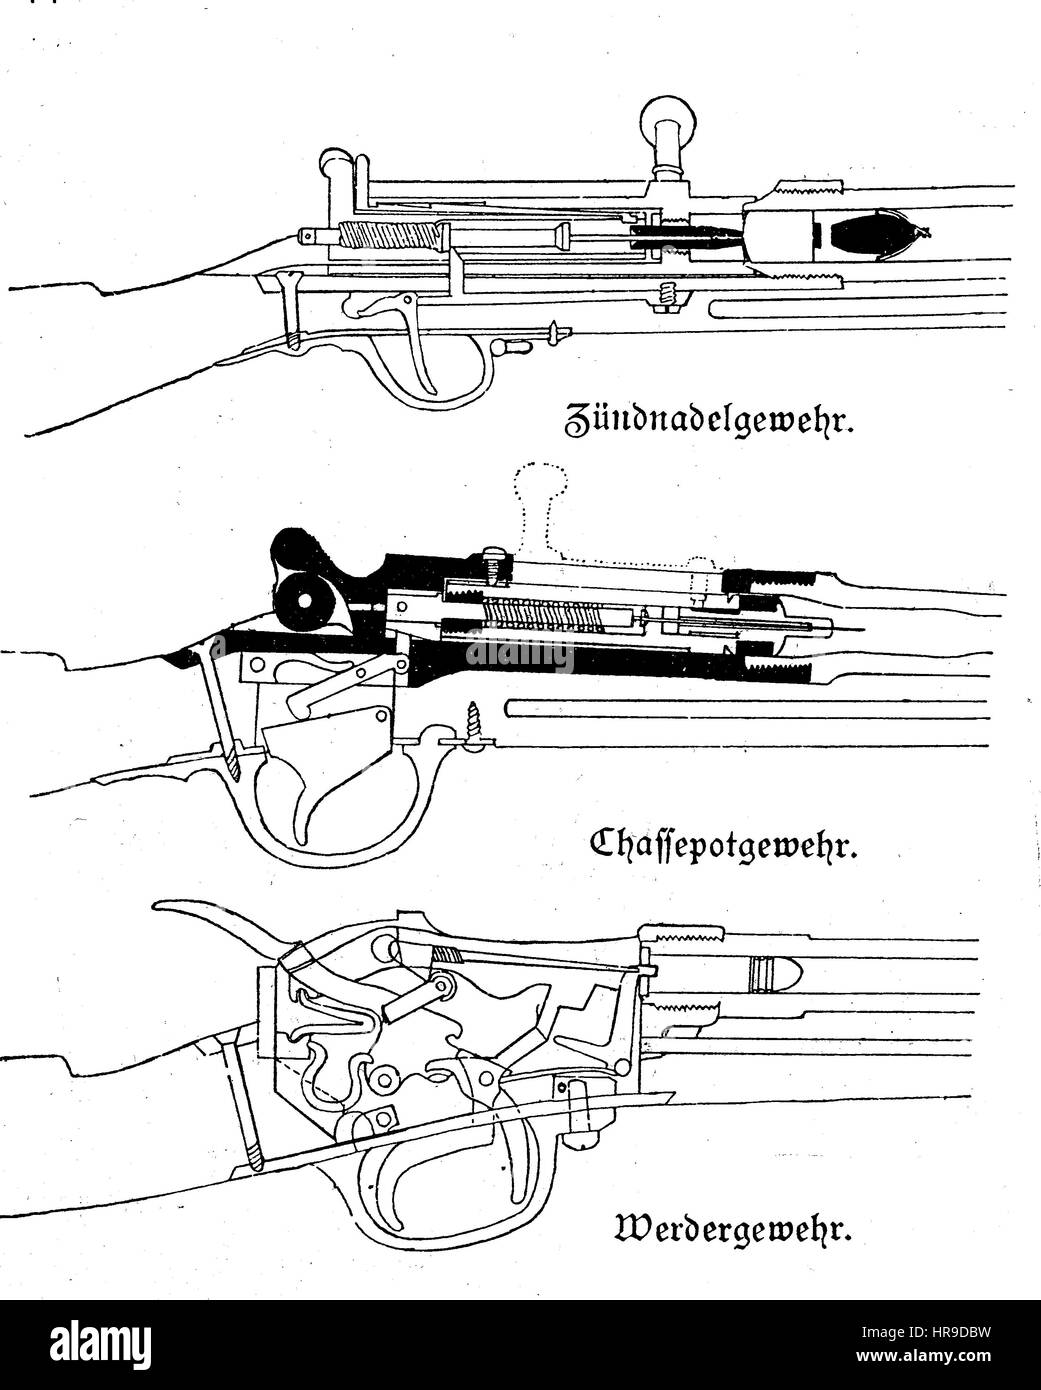 WWeapons dans la guerre franco-allemande, le fusil à aiguille Dreyse, qui est un fusil militaire breechloading, célèbre comme la principale arme de l'infanterie des Prussiens, qui l'a accepté pour le service en 1841 en tant que modèle 1841 canon léger percussions, percussions lumière fusil modèle 1841. Le Chassepot, officiellement connu sous le nom de fusil modele 1866, ce qu'un verrou carabine militaire breechloading. Le bavarois Werder rifle M / 1869 est le premier Allemand à rifle fusil à cartouche métallique et d'un centre de contact, Situation de l'époque de la guerre franco-allemande ou la guerre franco-allemande, Deutsch-Franzoesischer Krieg, 1 Banque D'Images